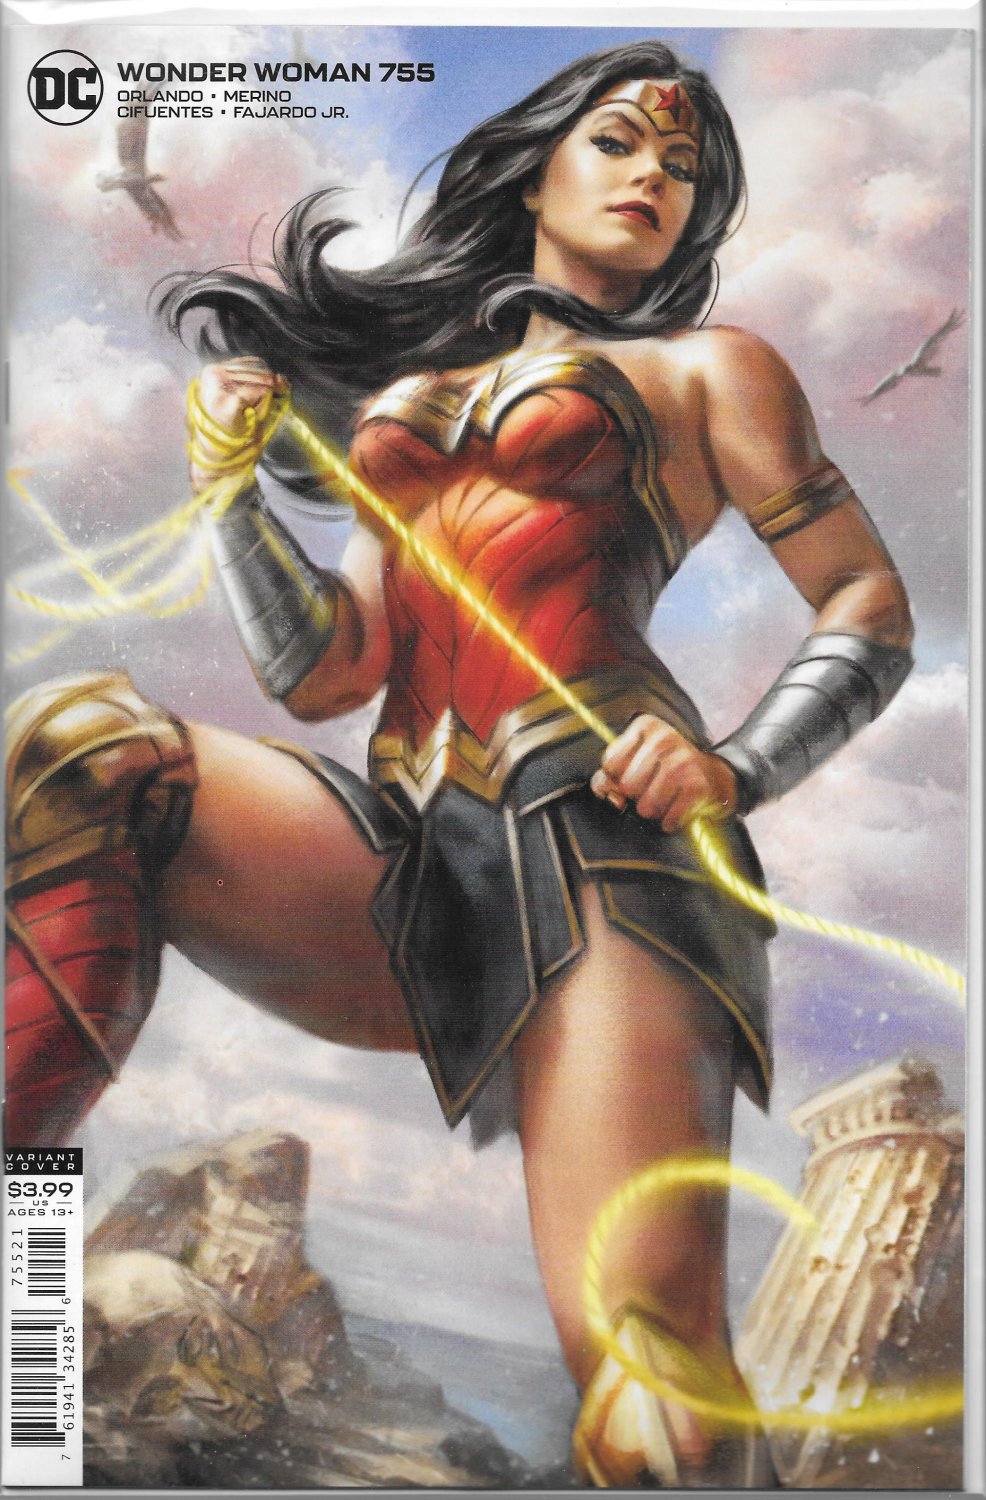 DC COMICS WONDER WOMAN #755